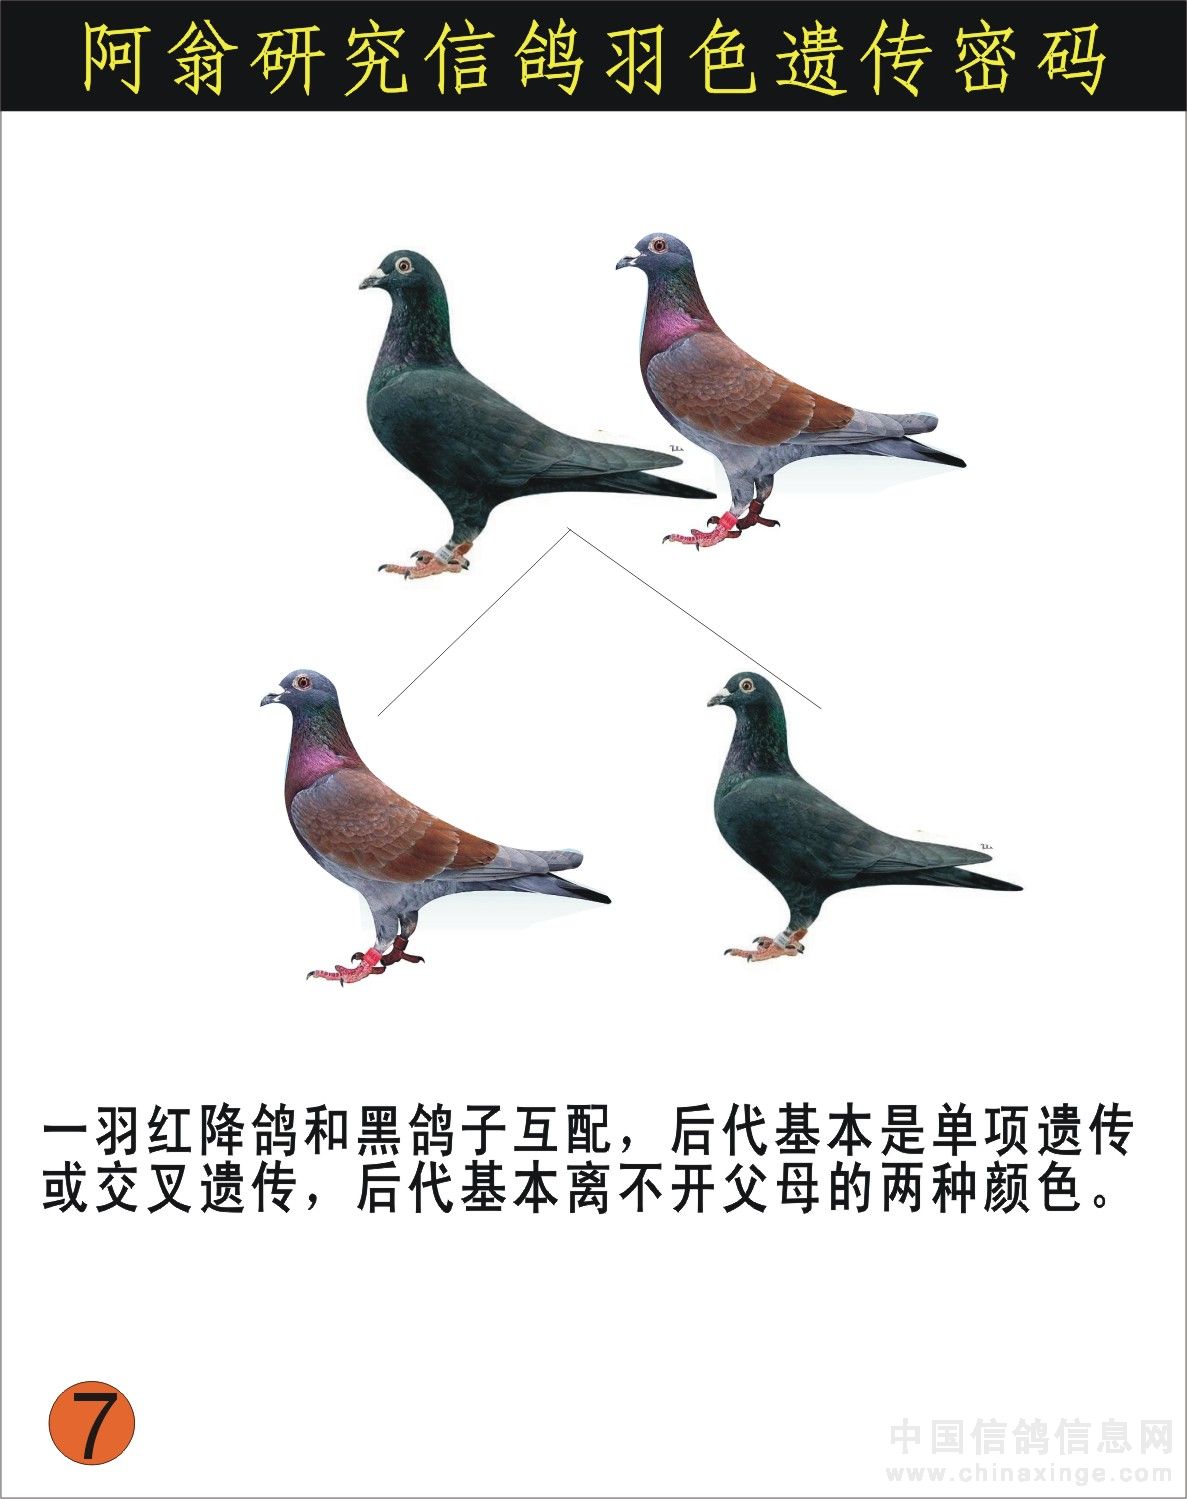 信鸽羽色遗传密码【图】_日志_攀百鸽舍 - 赛鸽资讯网